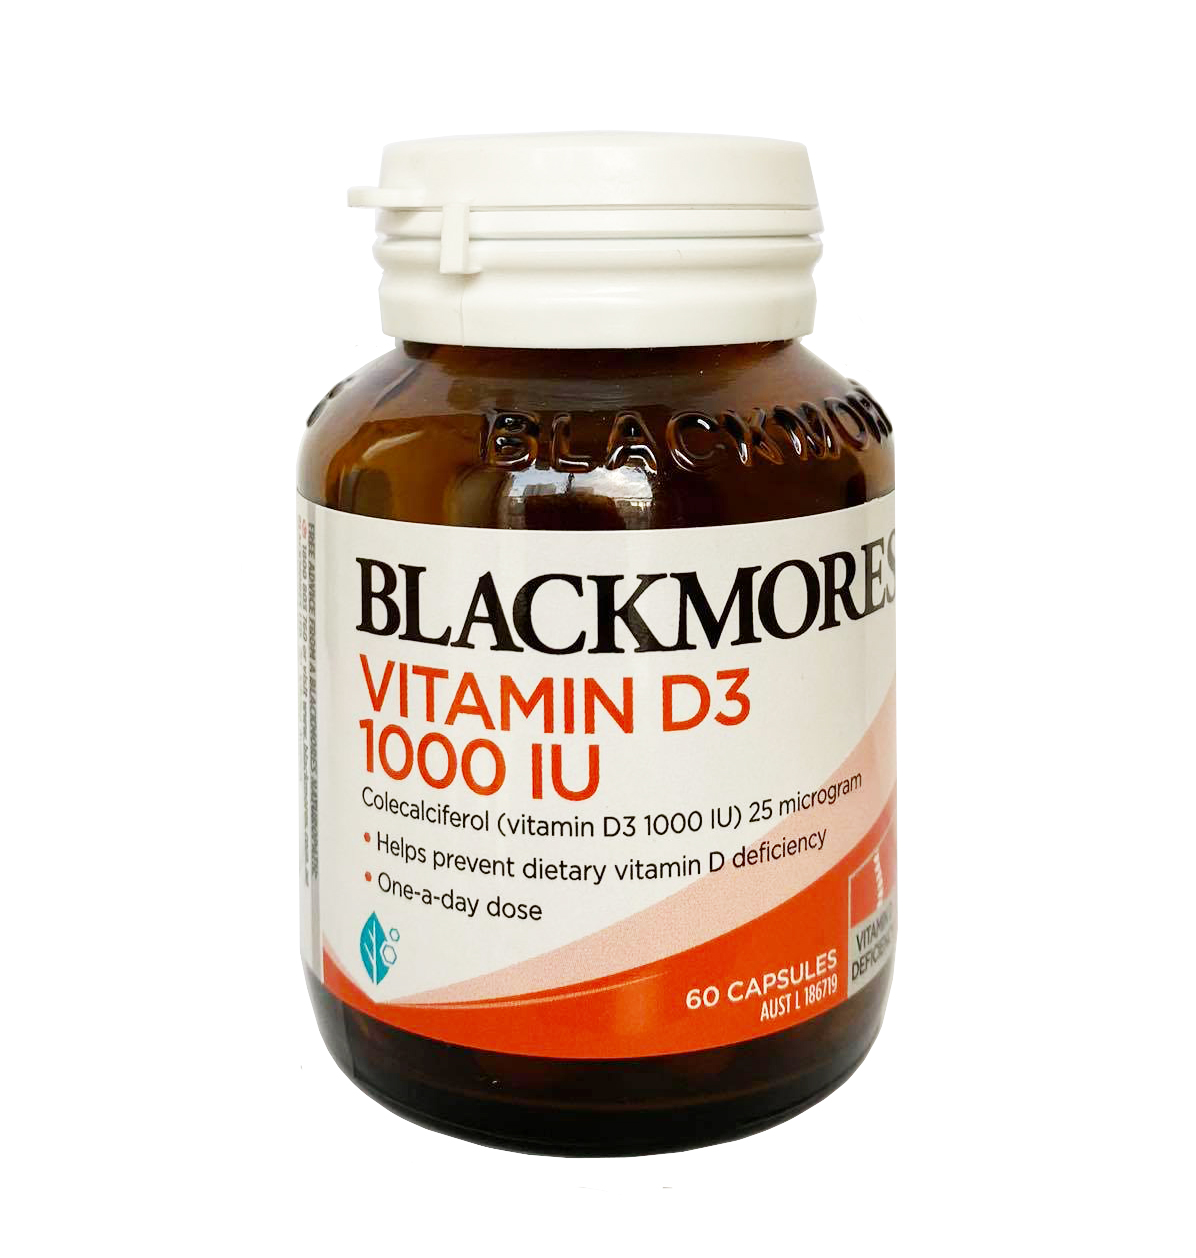 Tìm hiểu về blackmores vitamin d hiệu quả và an toàn